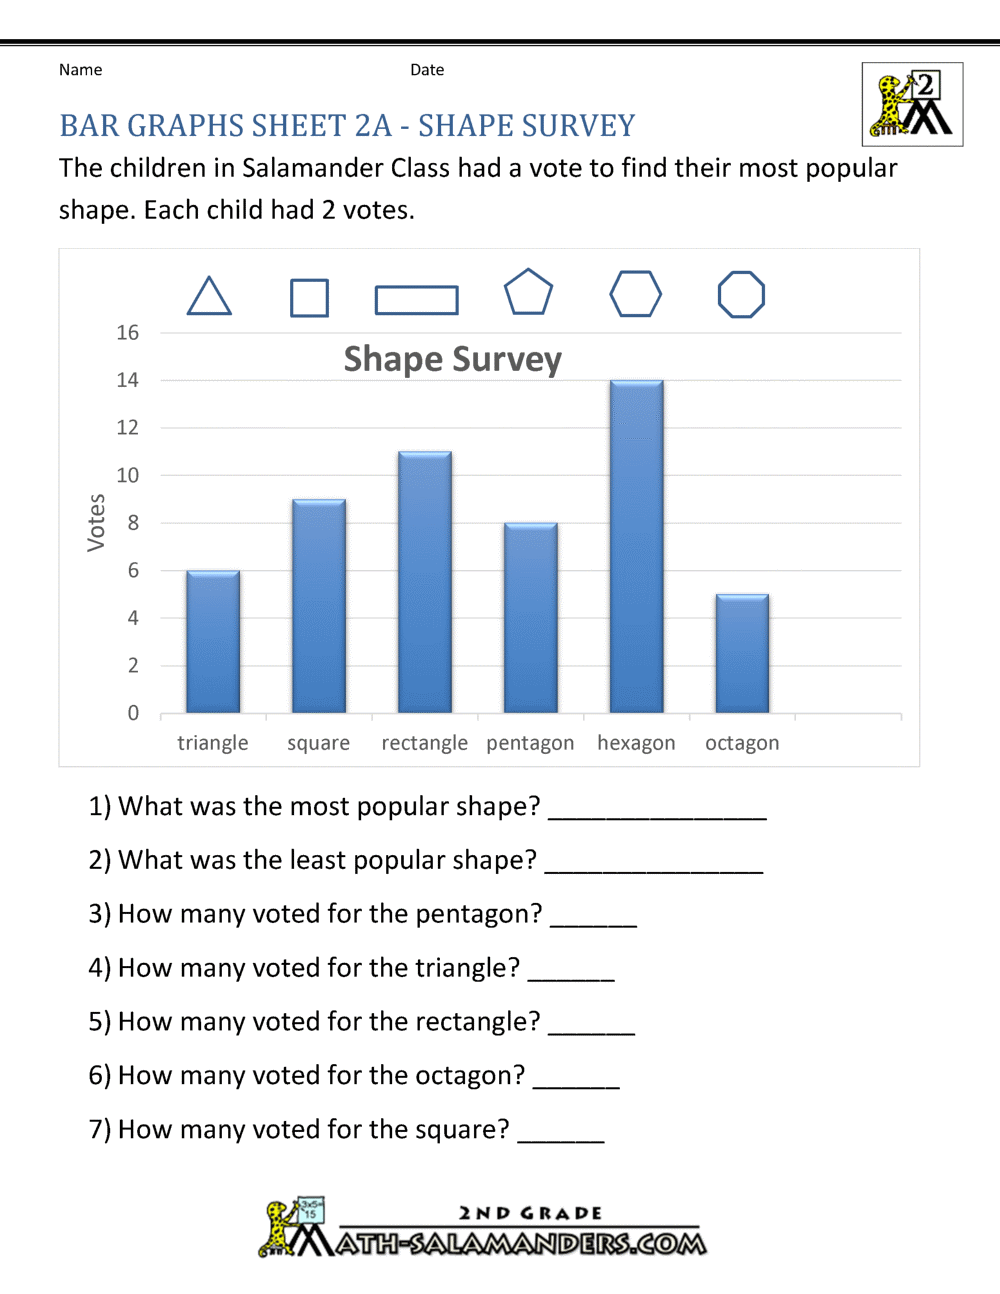 bar-graphs-2nd-grade